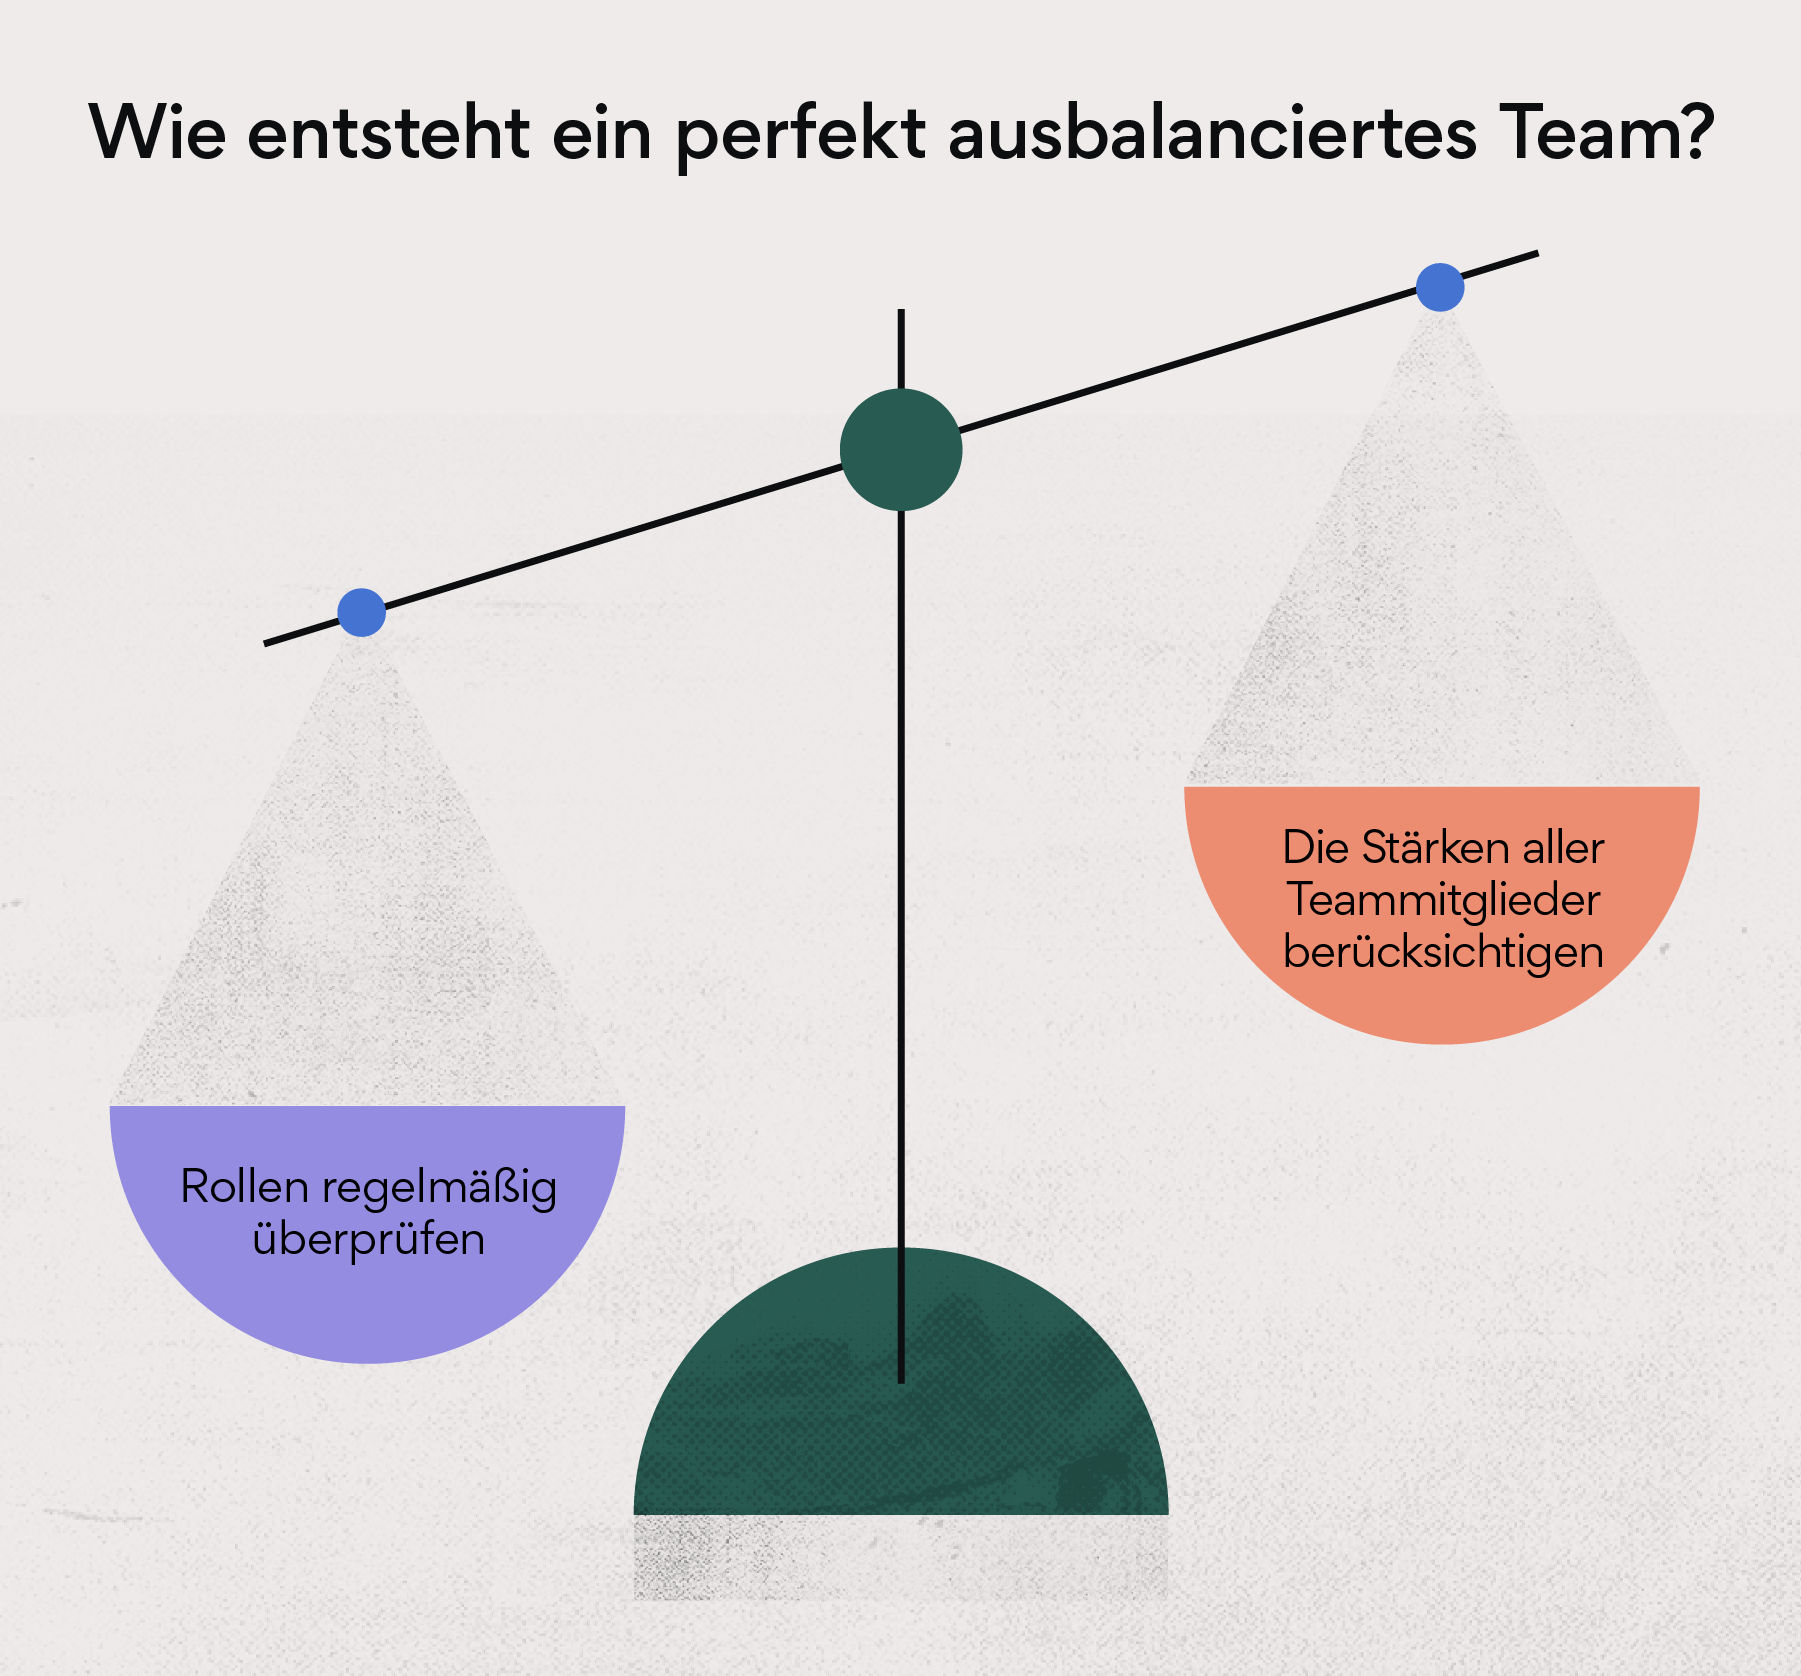 Wie entsteht ein perfekt ausbalanciertes Team?